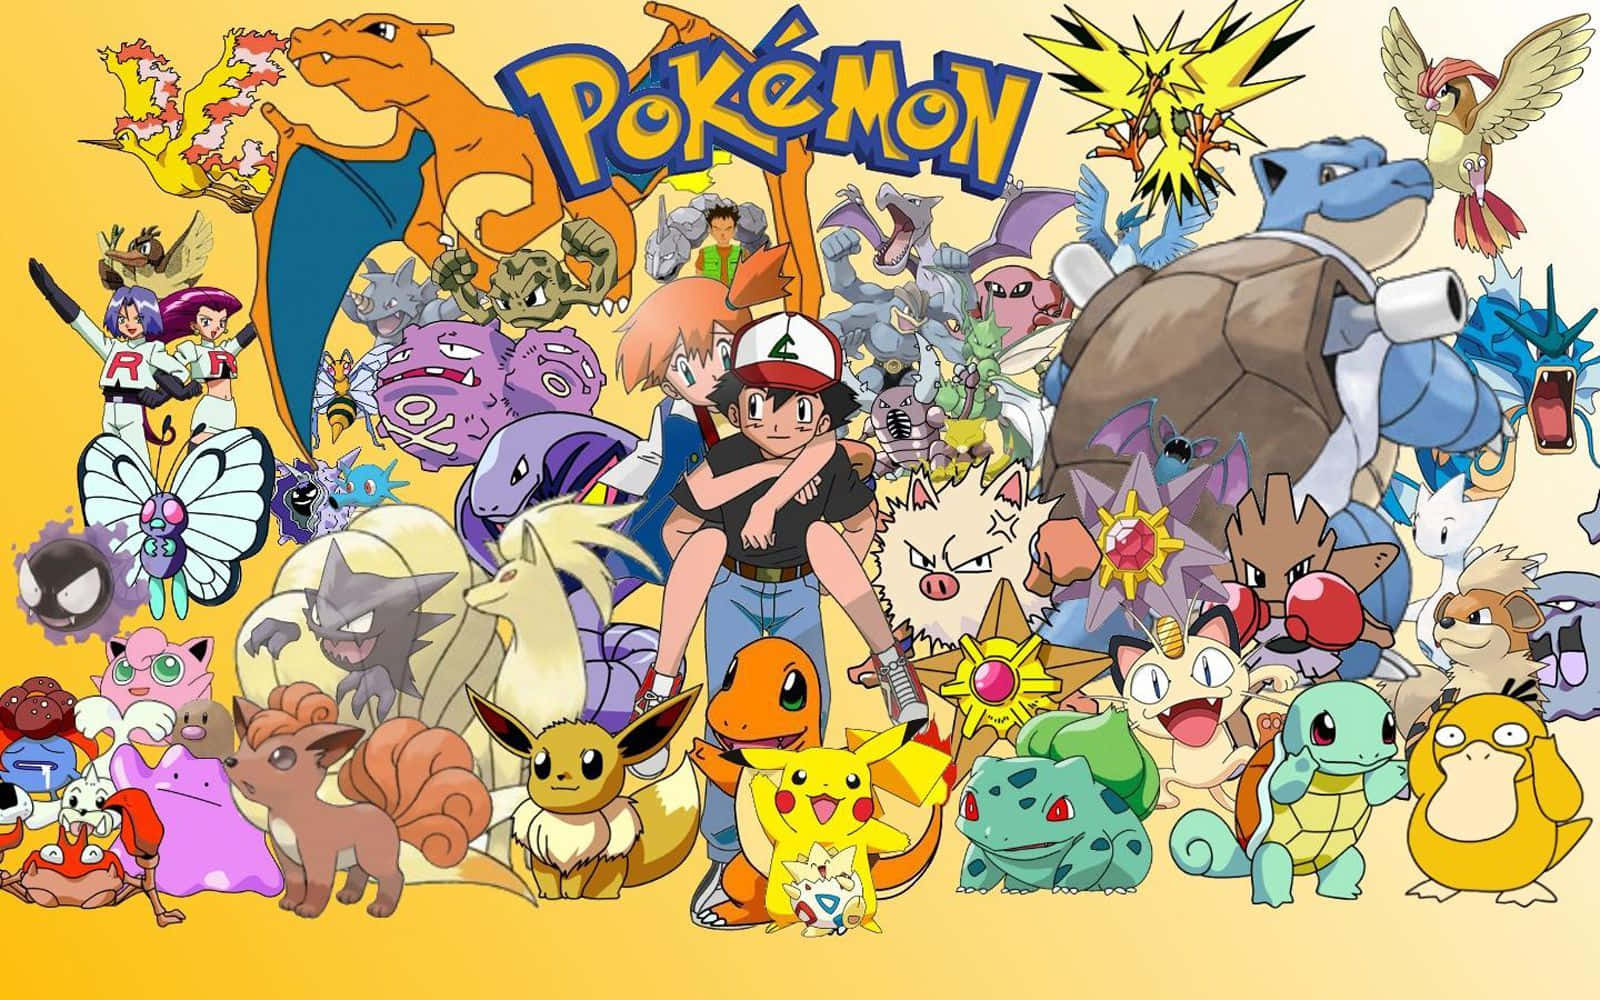 Celebrandoa Todos Los Pokémon En Memoria De Su Legendario Universo.